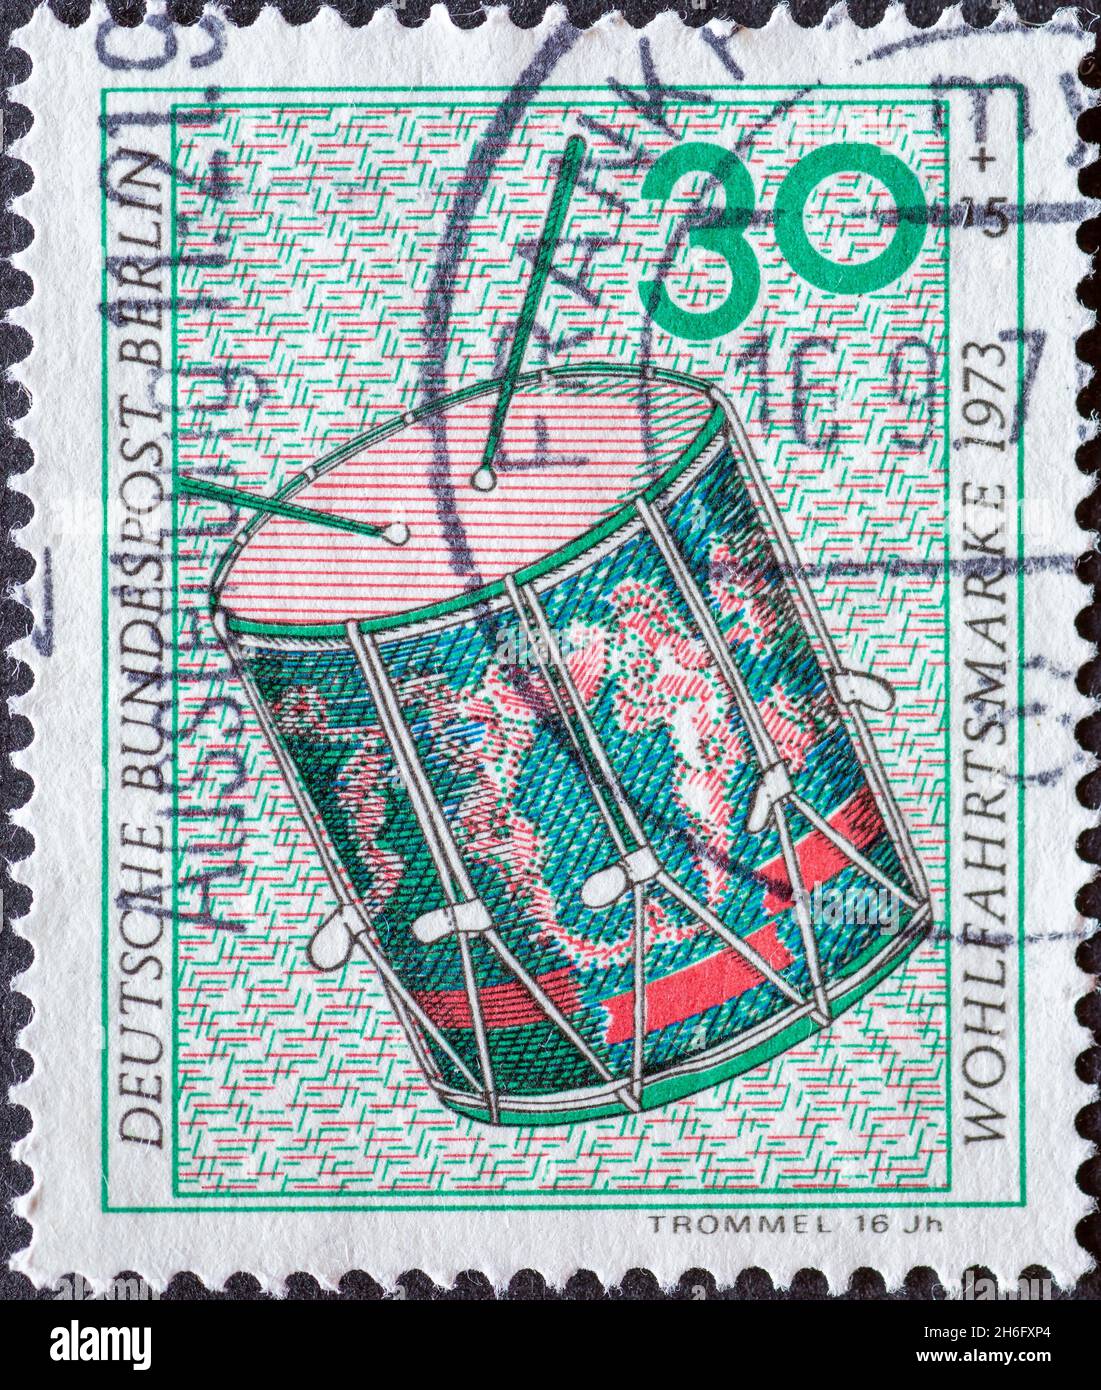 ALLEMAGNE, Berlin - VERS 1973: Timbre-poste d'Allemagne, Berlin montrant un timbre-poste de charité de 1973 instruments de musique.Ici tambour Banque D'Images